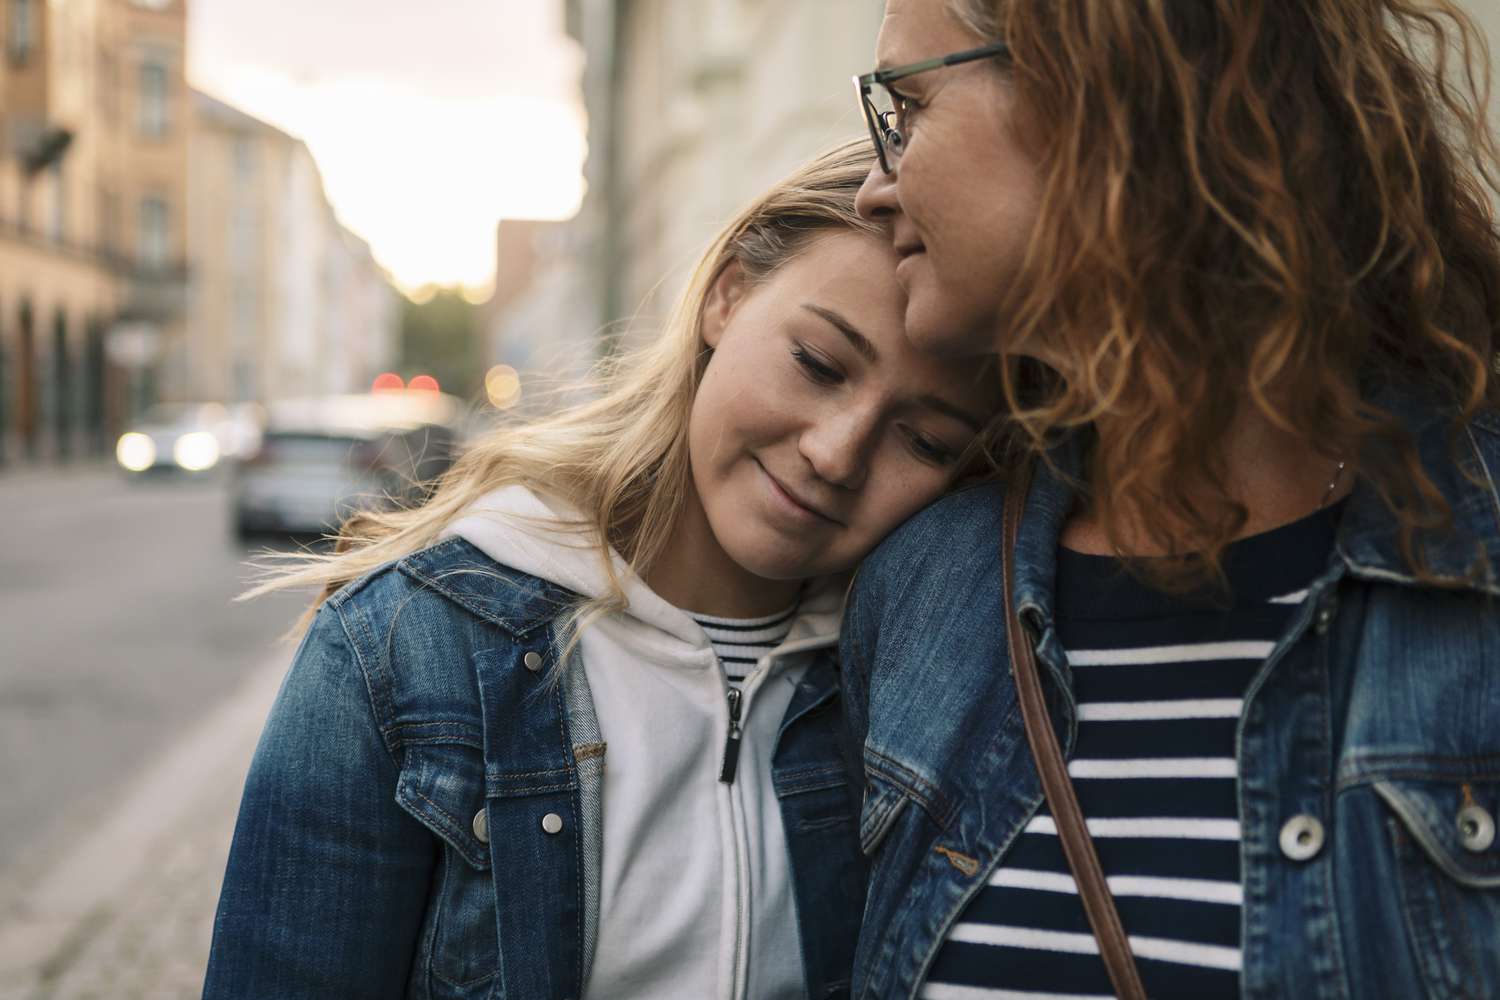 Студија менталног здравља тинејџера открива прекид везе са родитељима